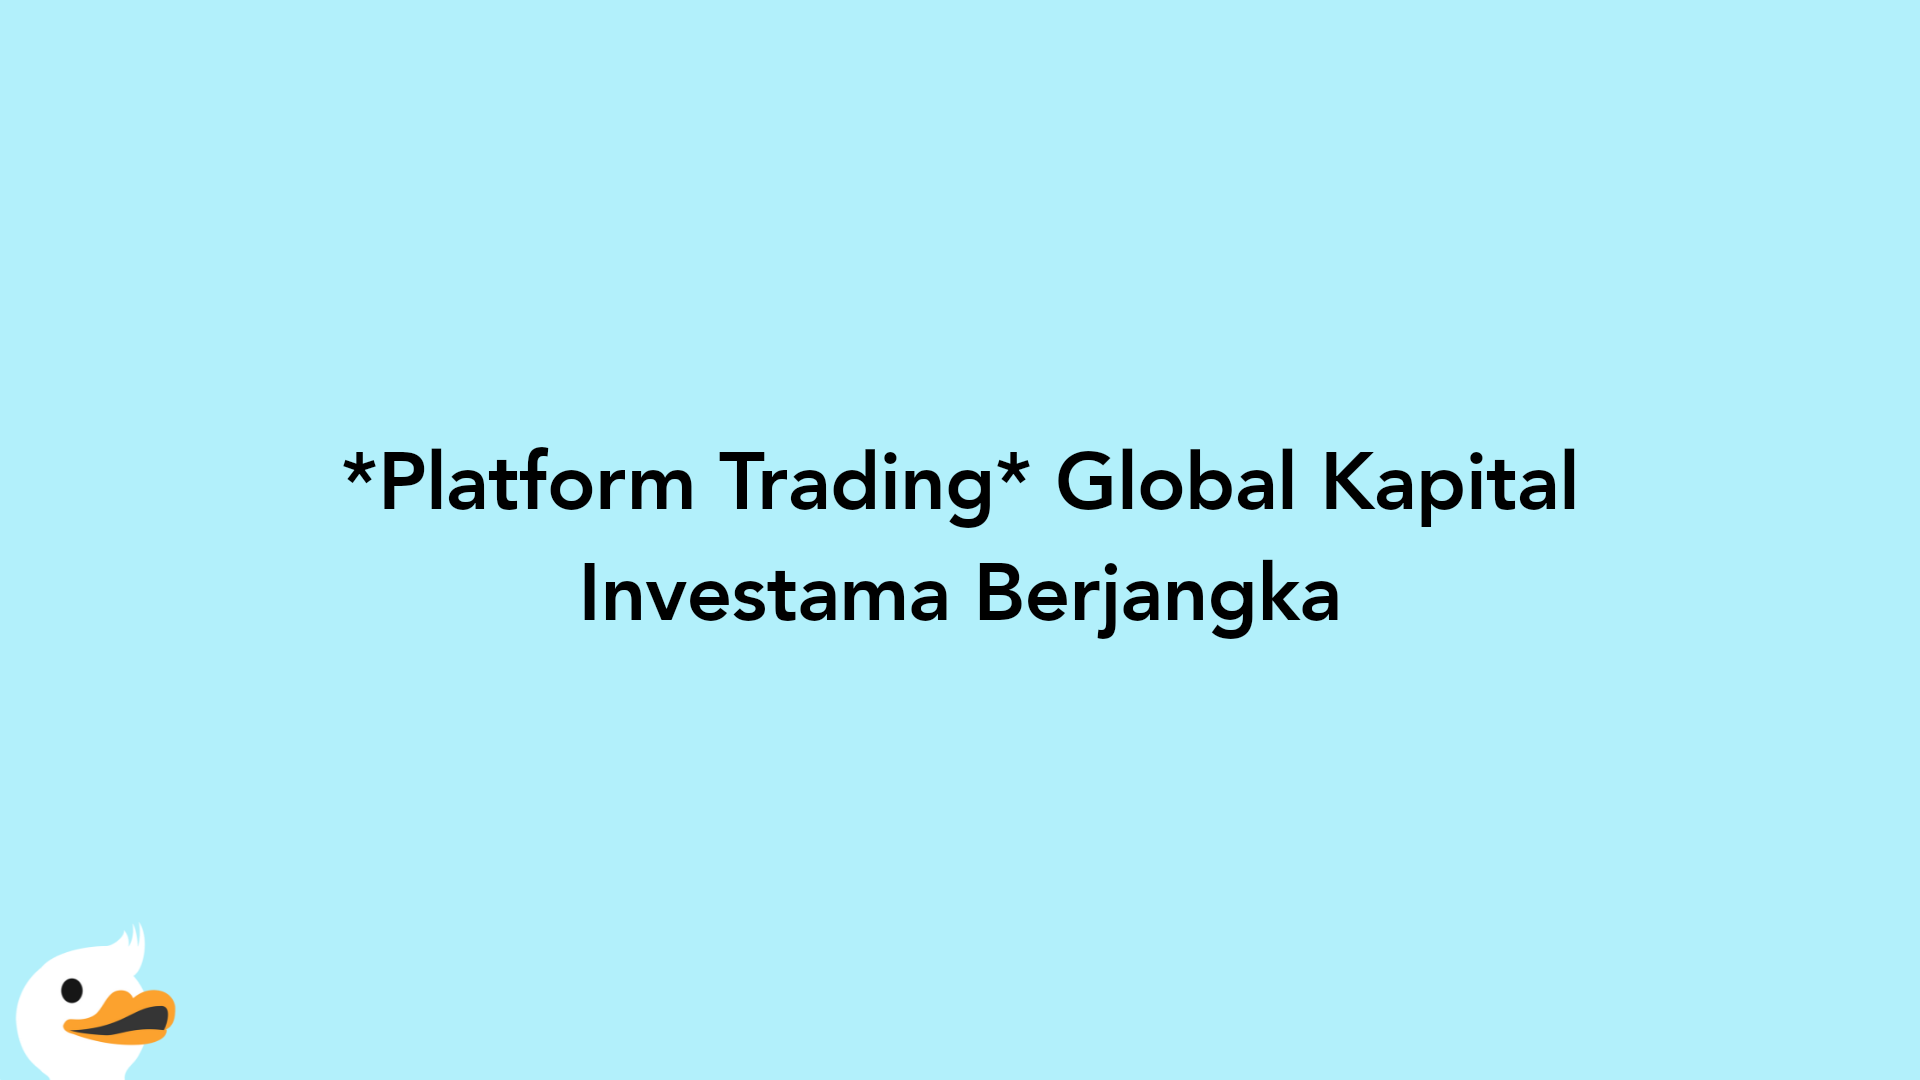 Platform Trading Global Kapital Investama Berjangka